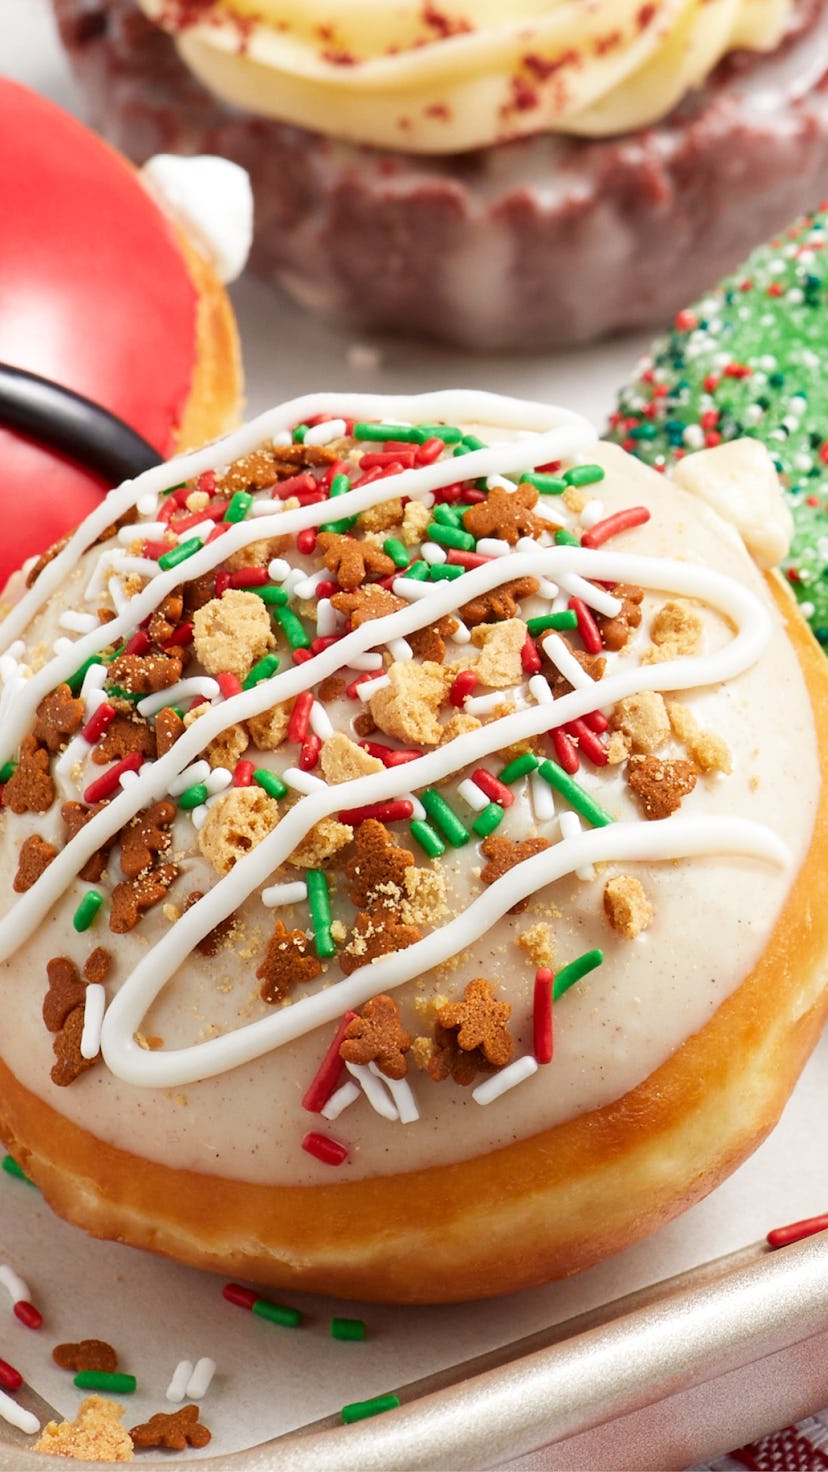 Krispy Kreme's Christmas doughnuts for 2022 are inspired by Santa’s Bake Shop.